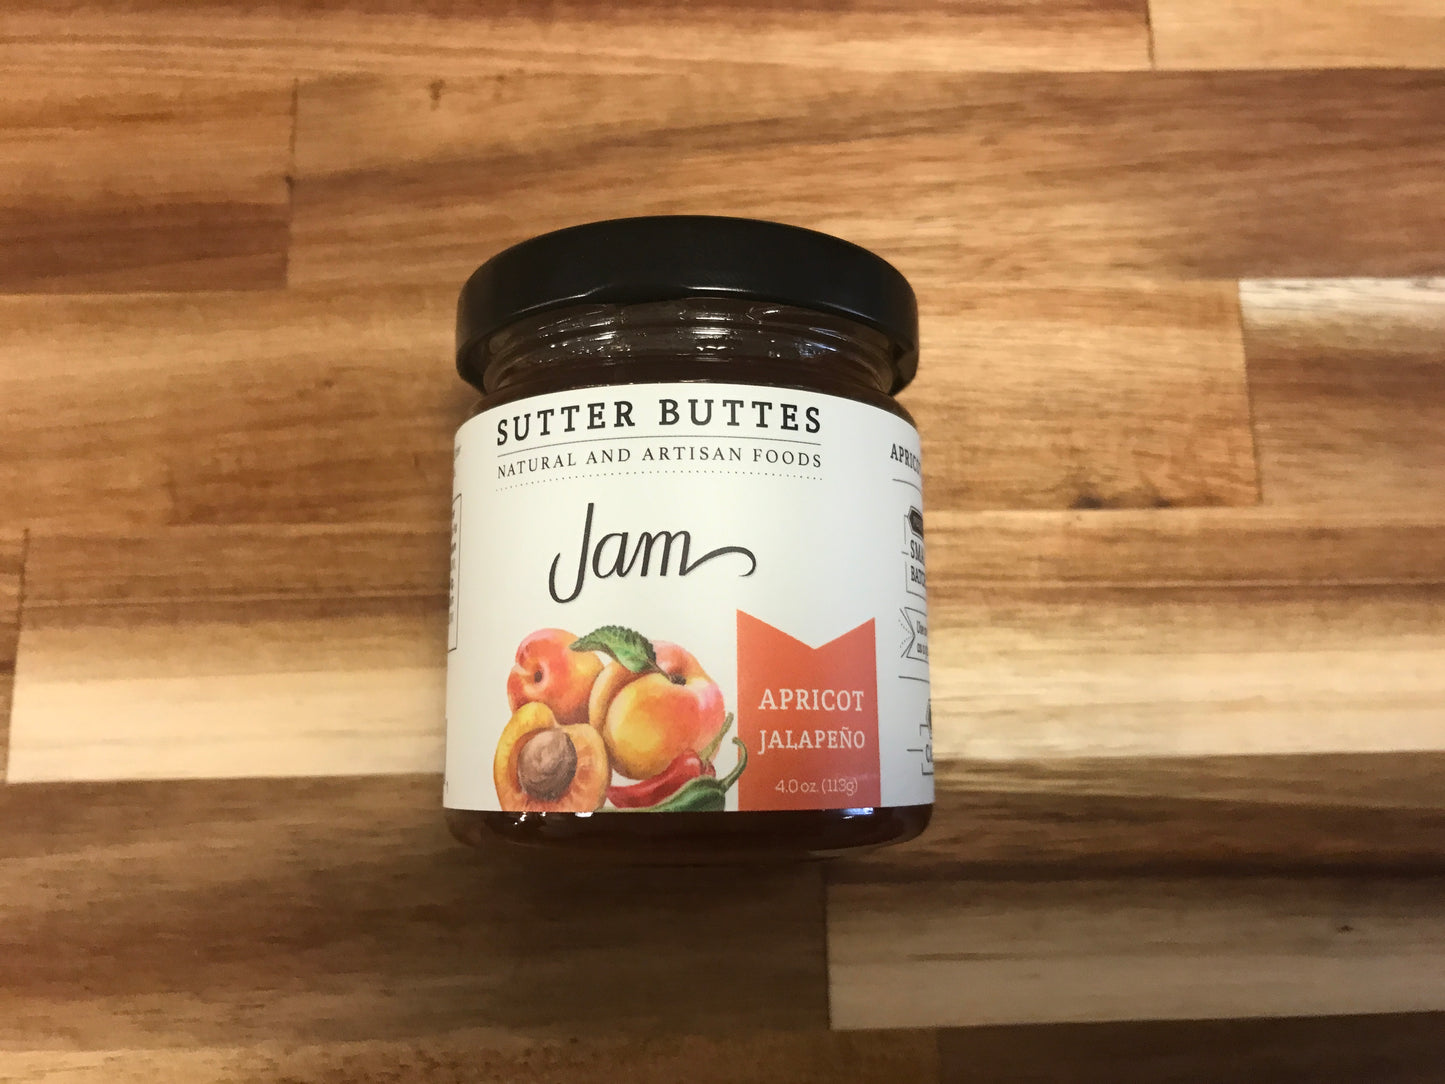 Sutter Buttes Jam Apricot Jalapeño